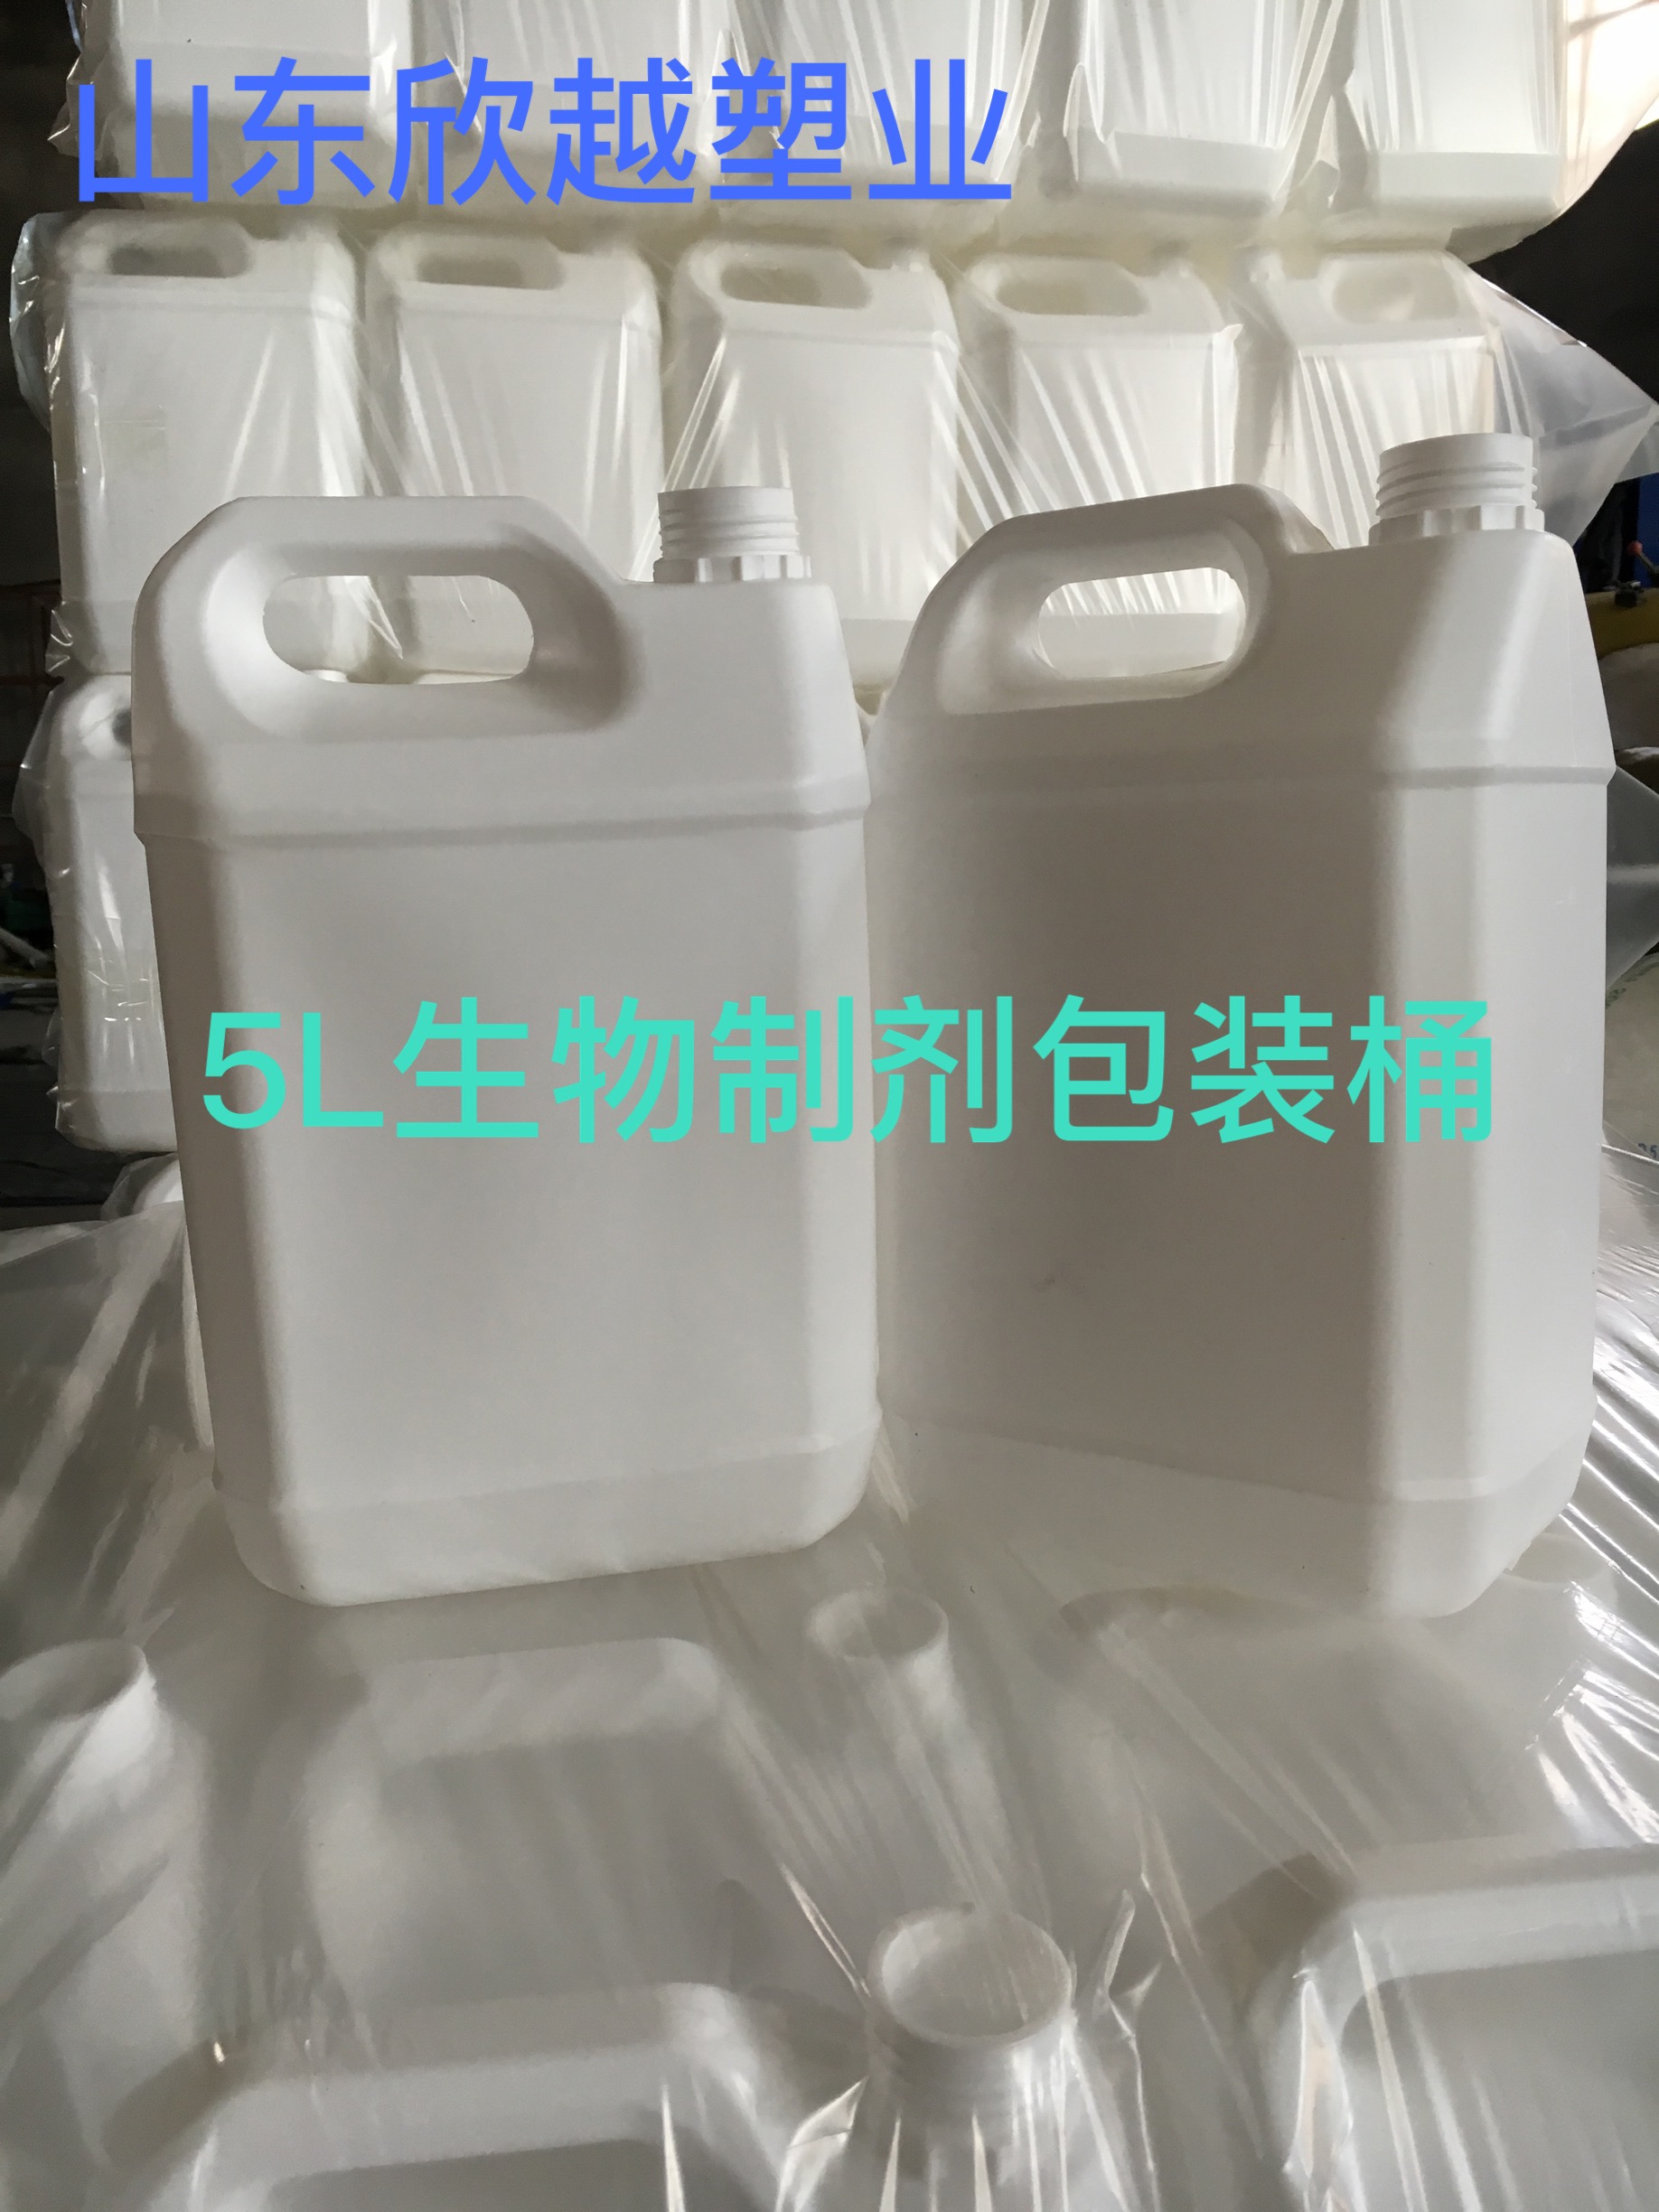 青岛5升塑料桶，山东25升塑料桶,庆云50升塑料桶,10升塑料桶 青岛5升塑料桶厂家图片